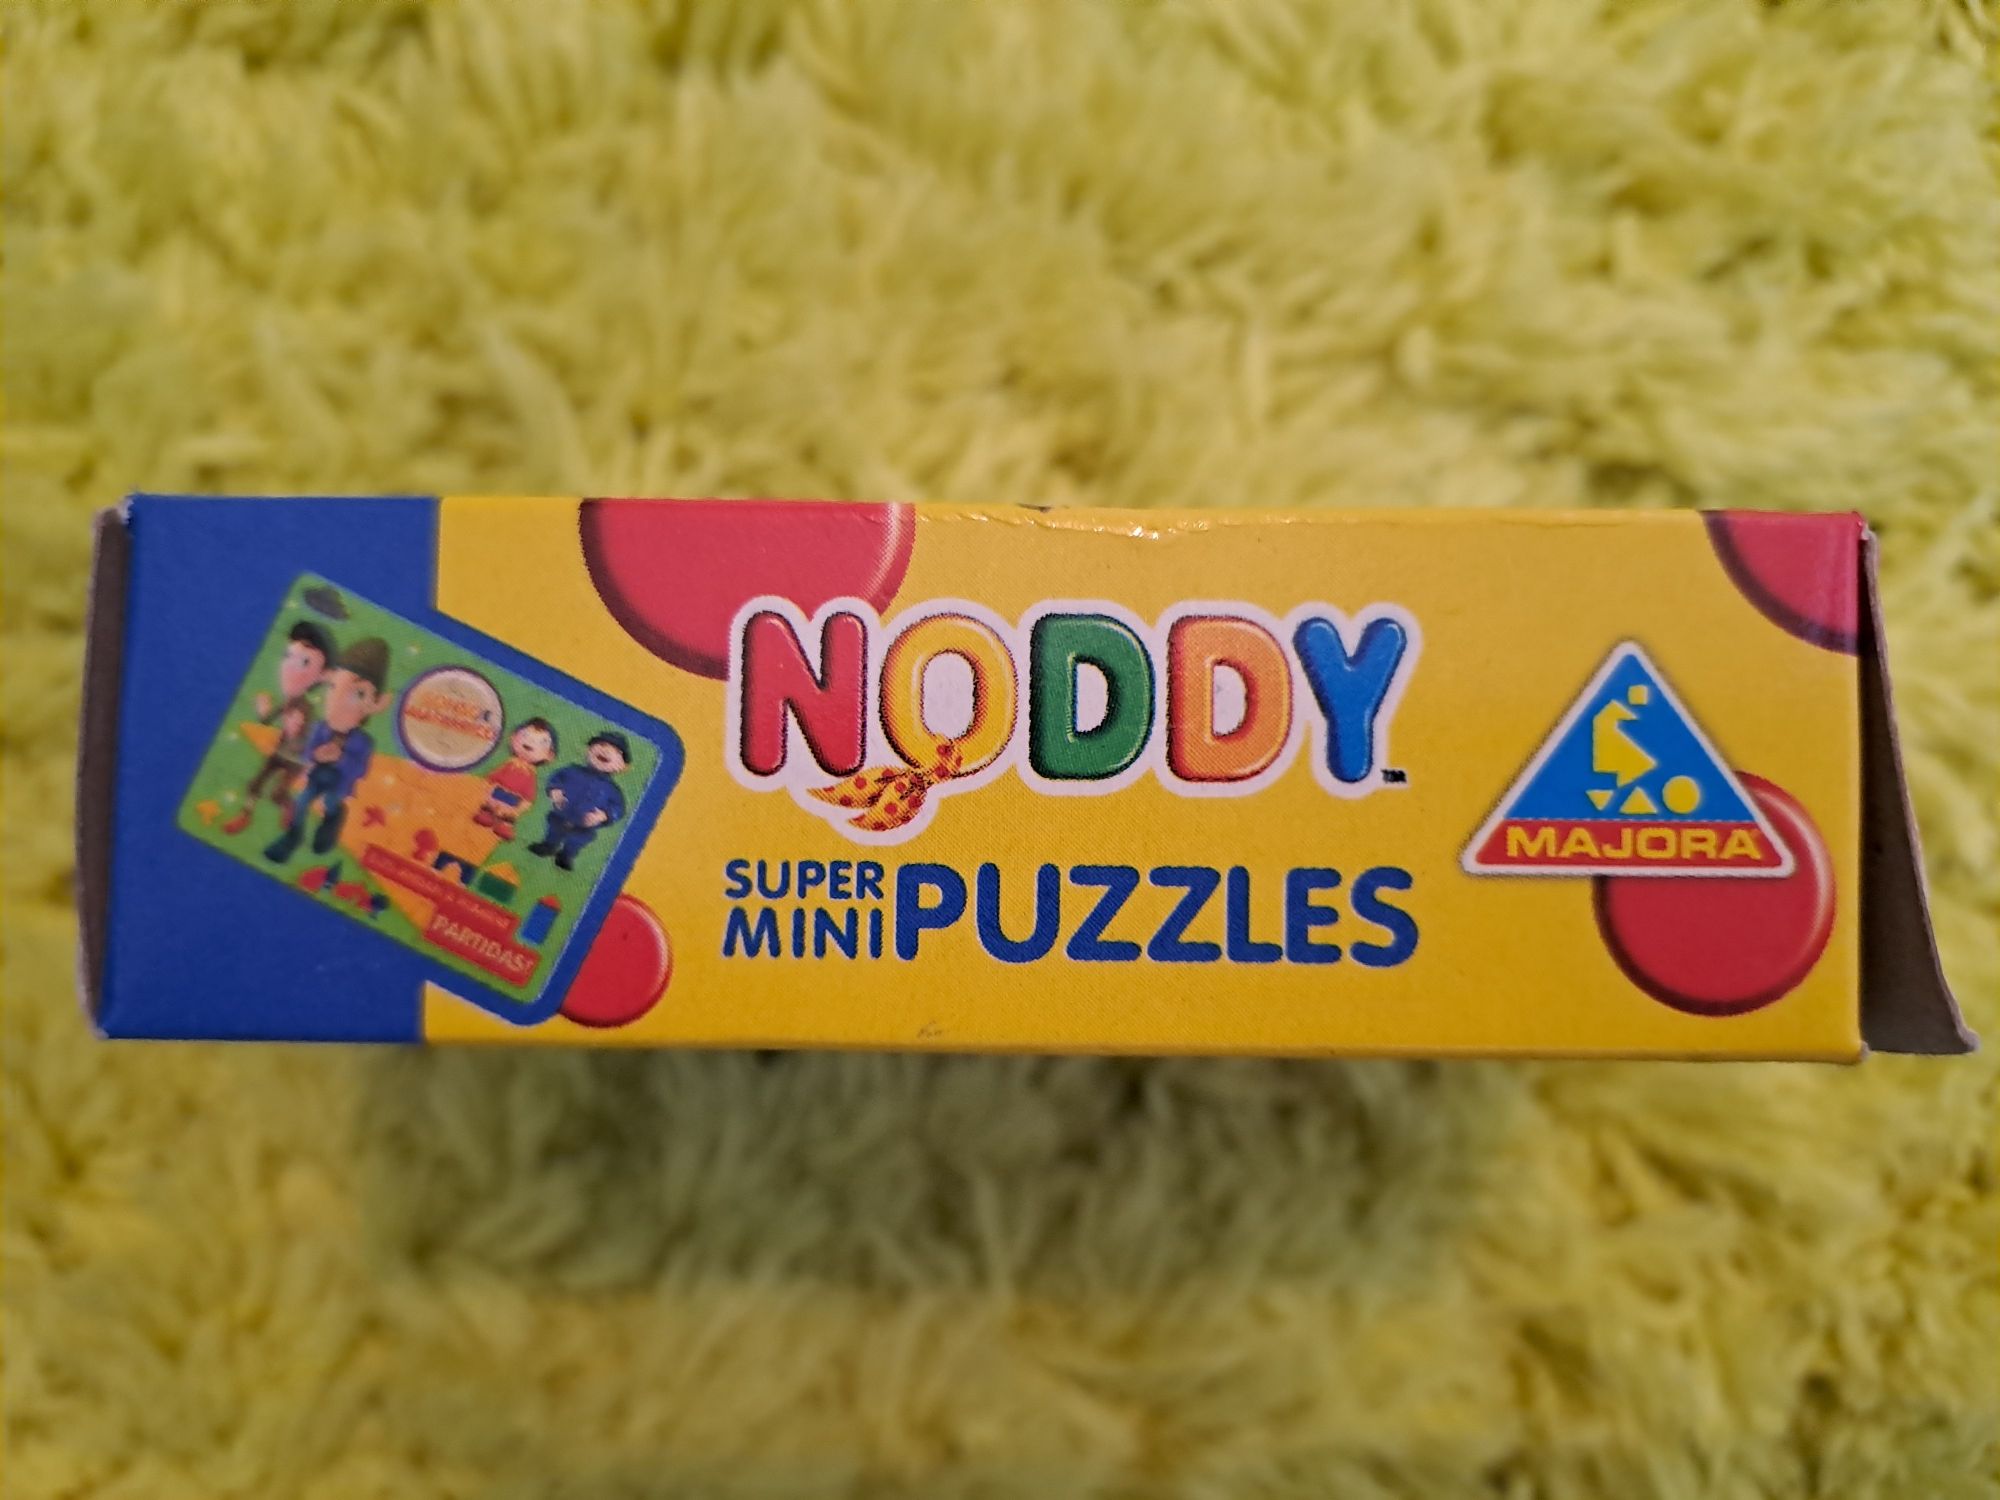 Mini puzzle do Noddy